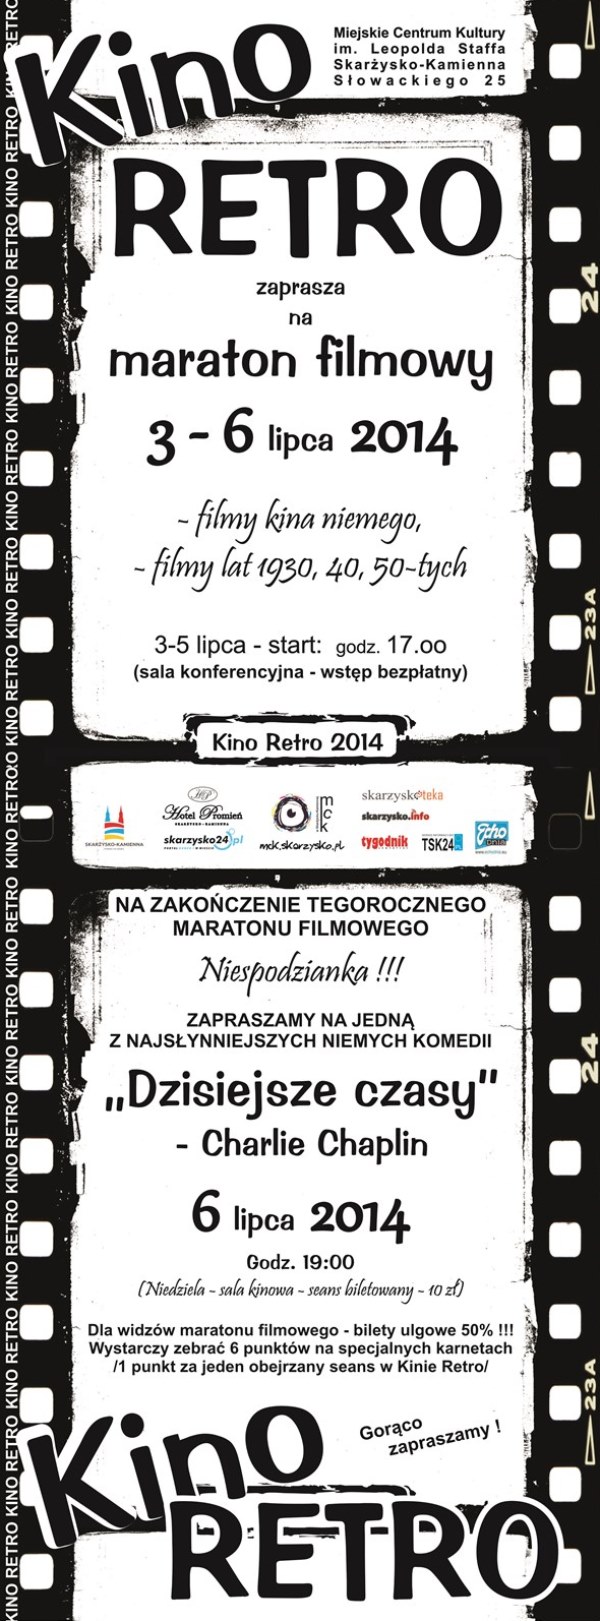 Kino RETRO – maraton filmowy – MCK – 3-6.07.2014 r.